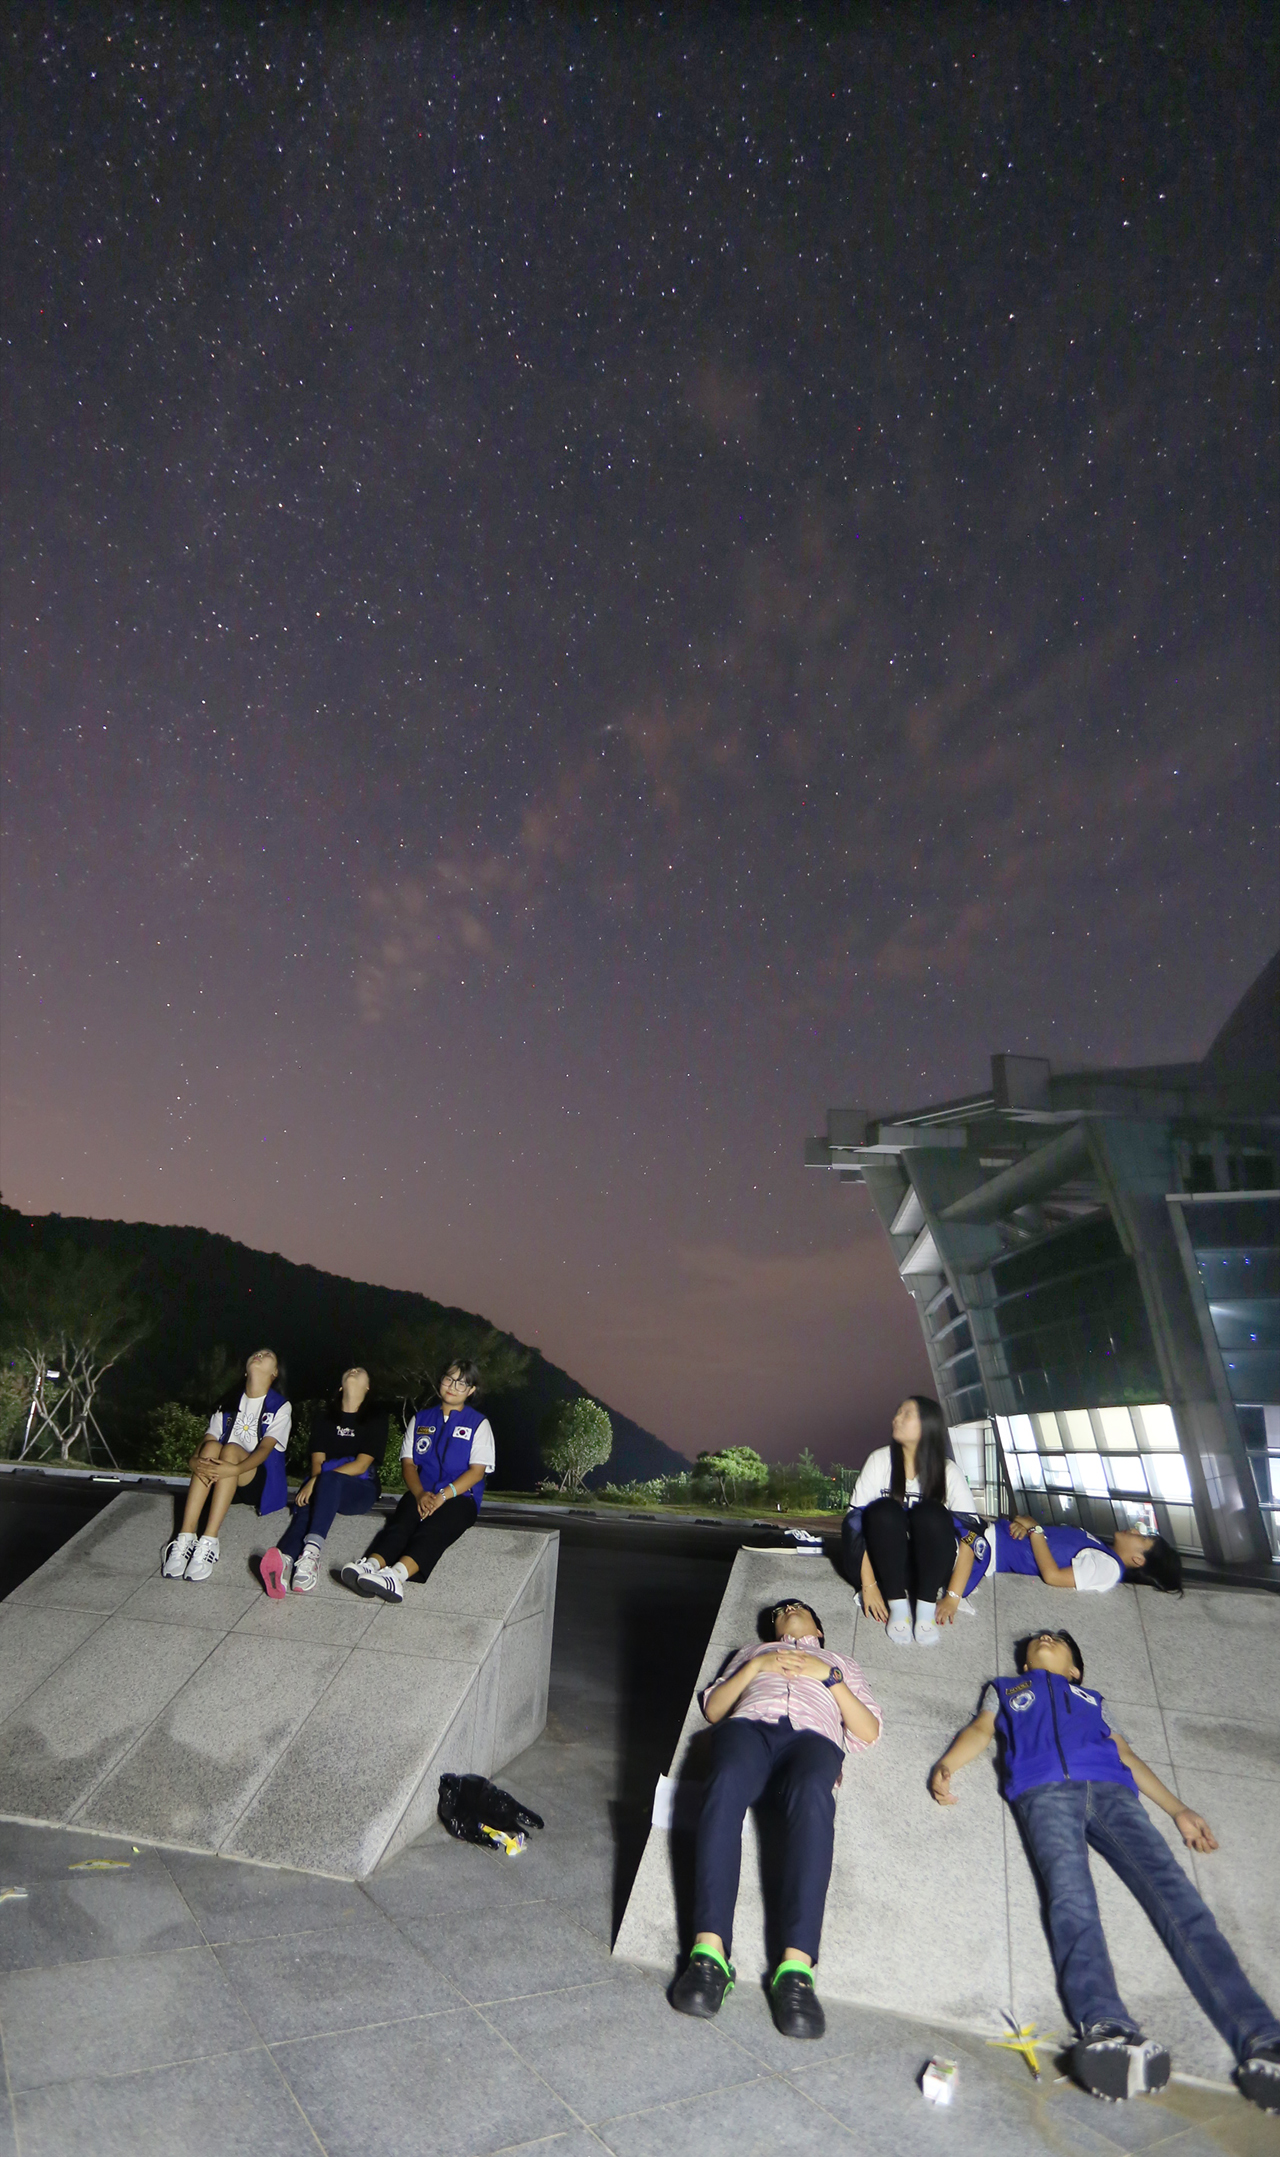 페르세우스 유성우를 마음에 담기 위해 광장에 모인 청소년이 은하수 아래에 누워 하늘을 바라보고 있다.